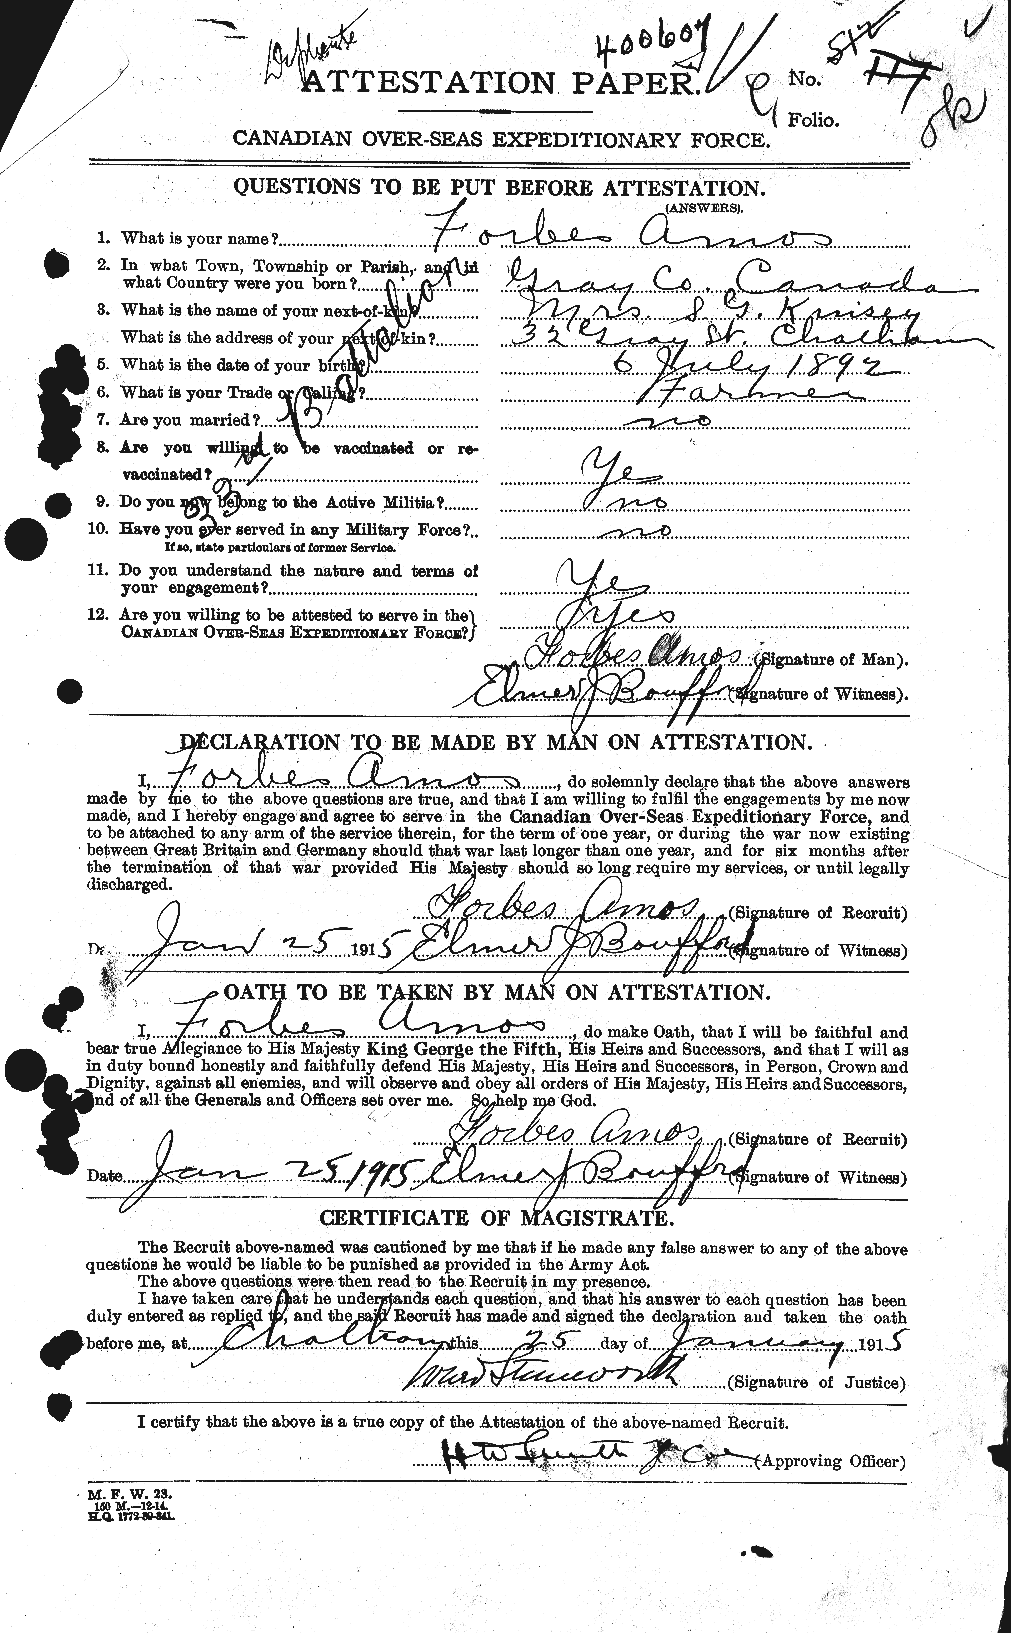 Dossiers du Personnel de la Première Guerre mondiale - CEC 208669a